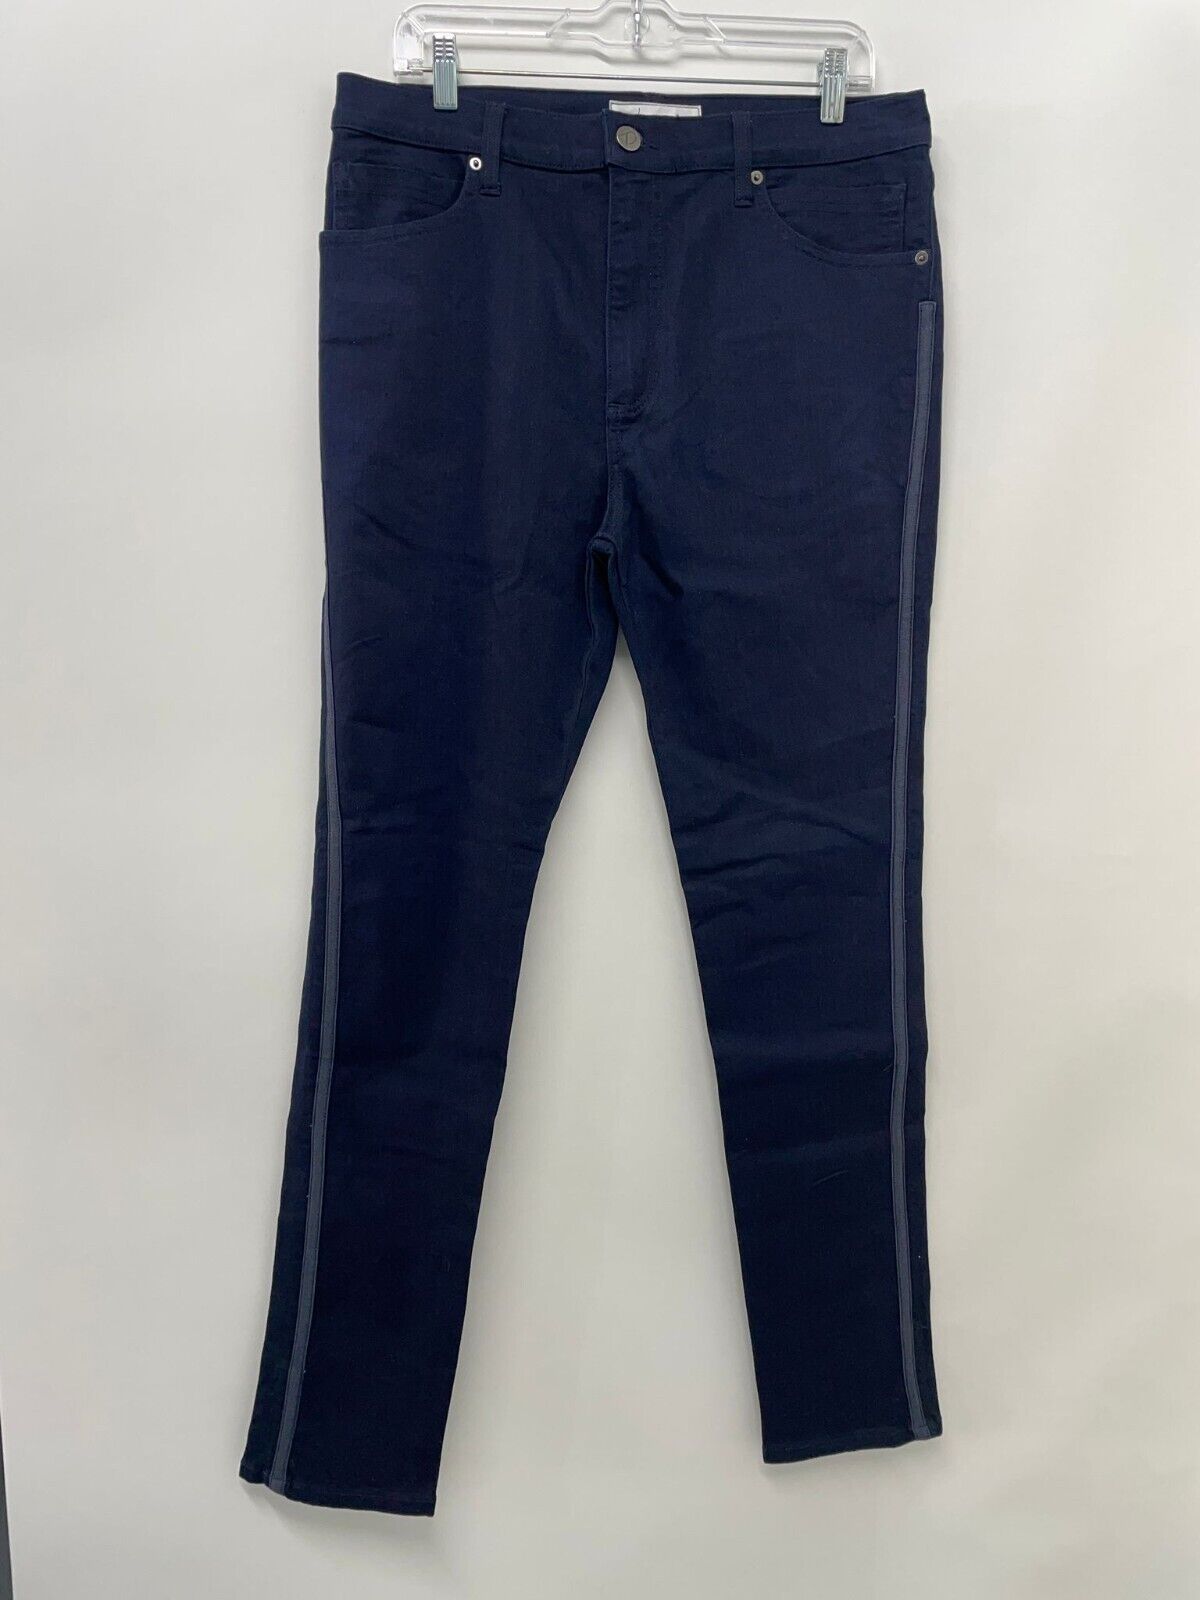 Presidio Mens 34 Dark Wash Stretch Slim Skinny Jeans Denim Pant Side Stripe